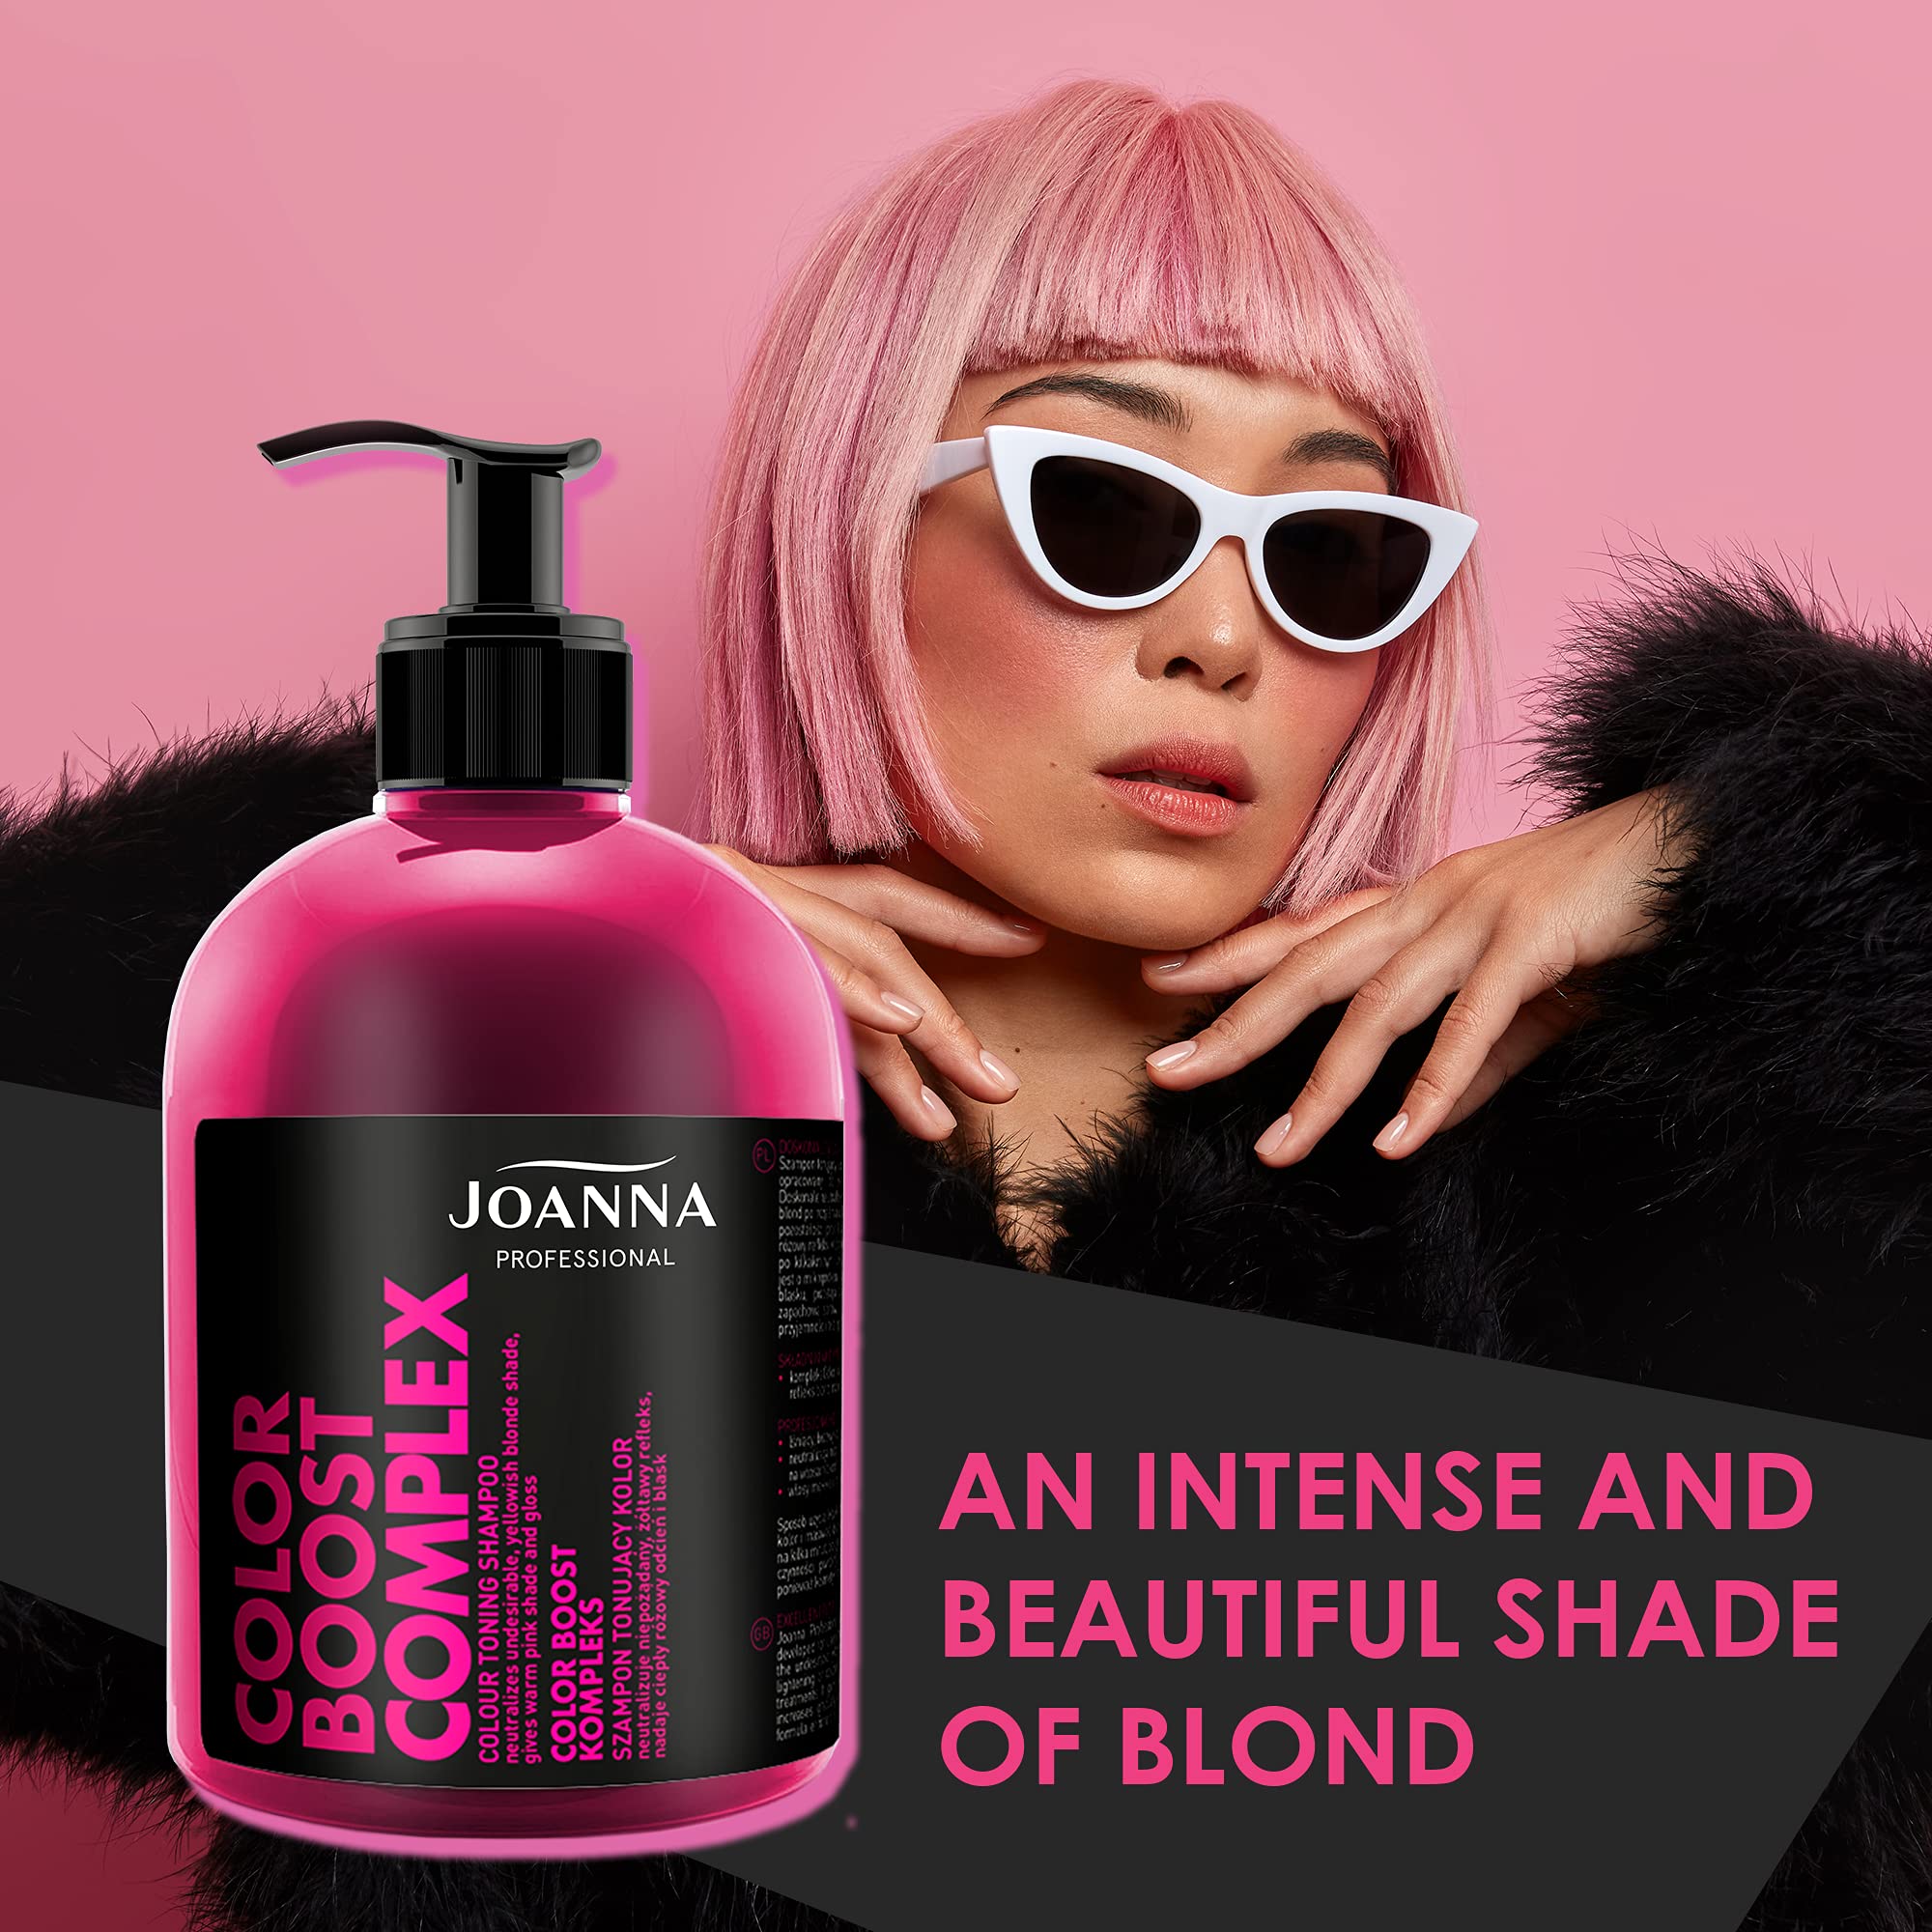 joanna szampon różowy color boost warszawa